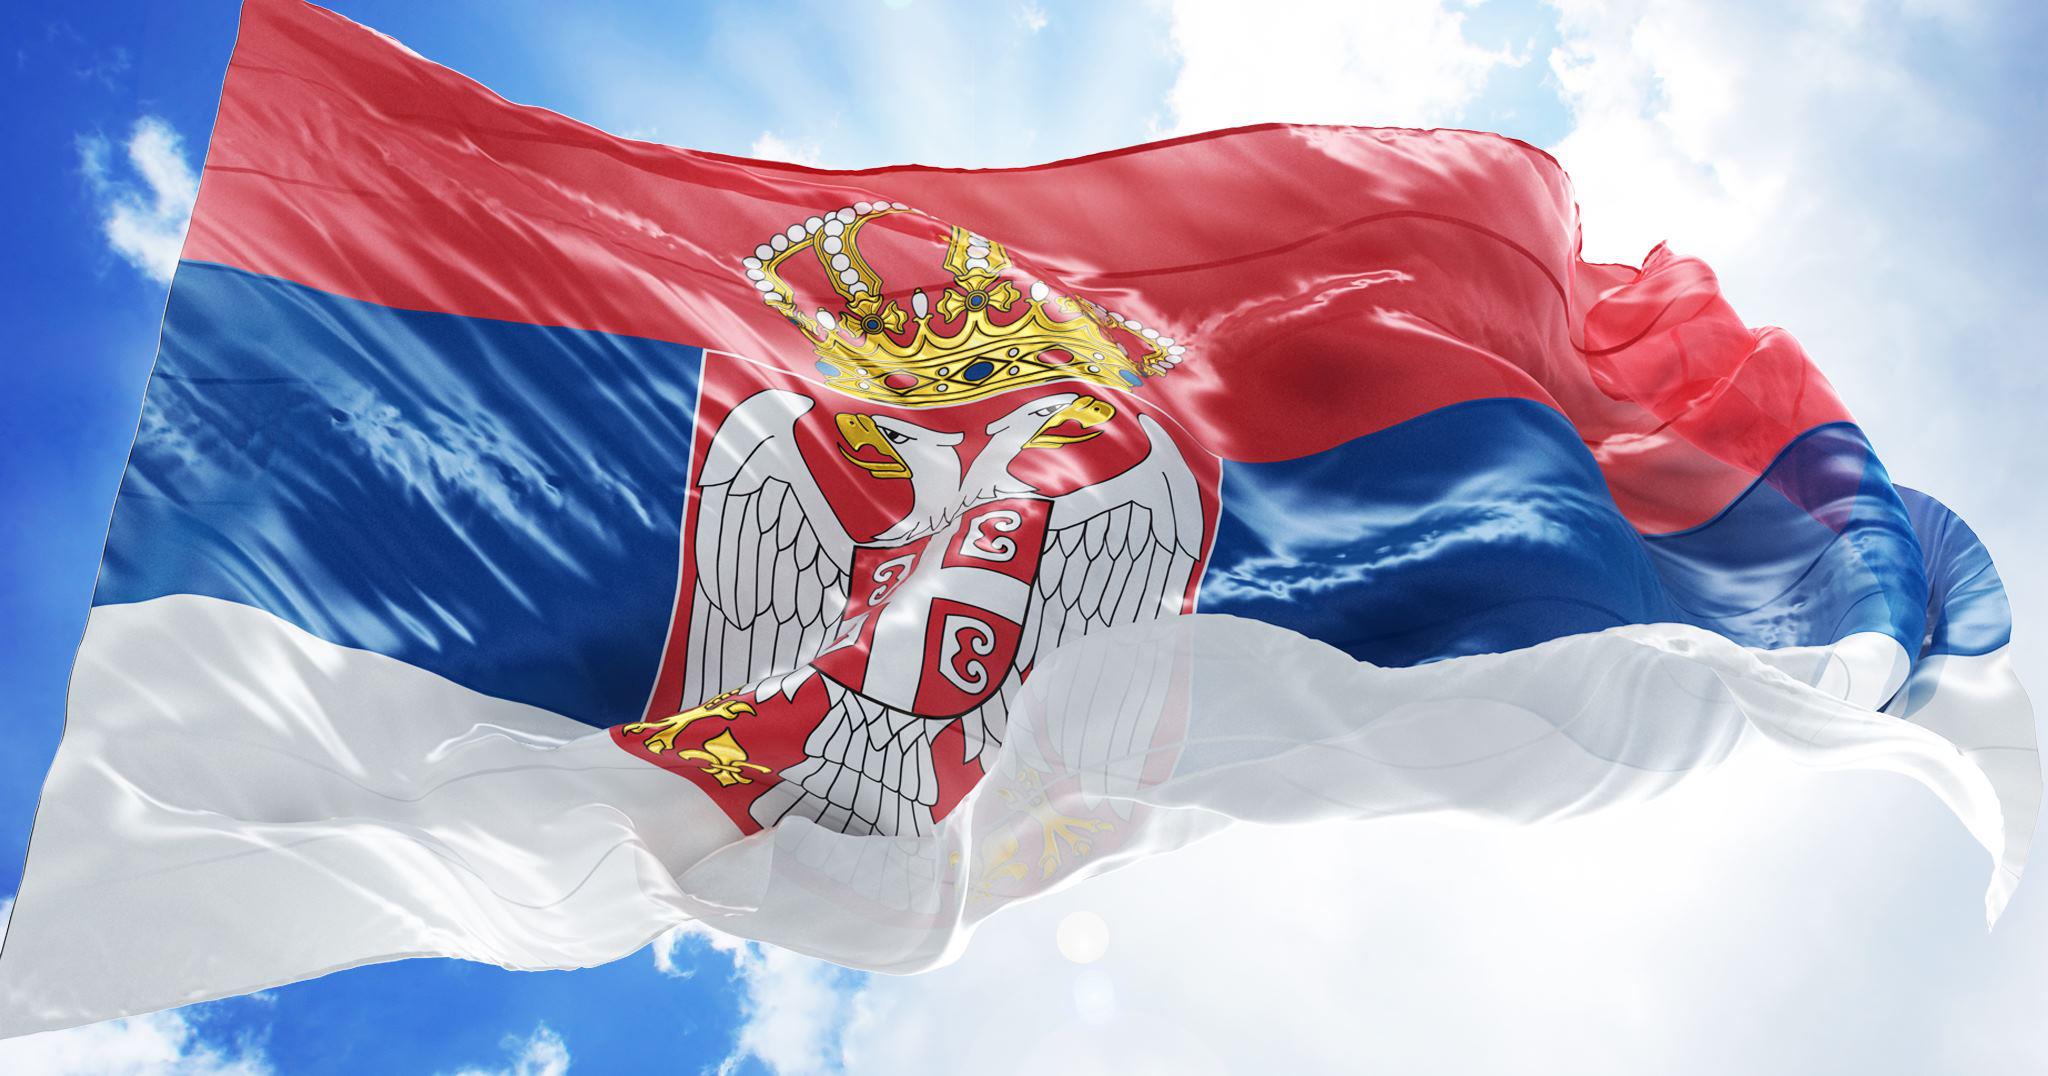 Сербия торговля. Флаг Сербия. Флаг Сербии и России вместе. День государственности Сербии. Сербия ассоциации.